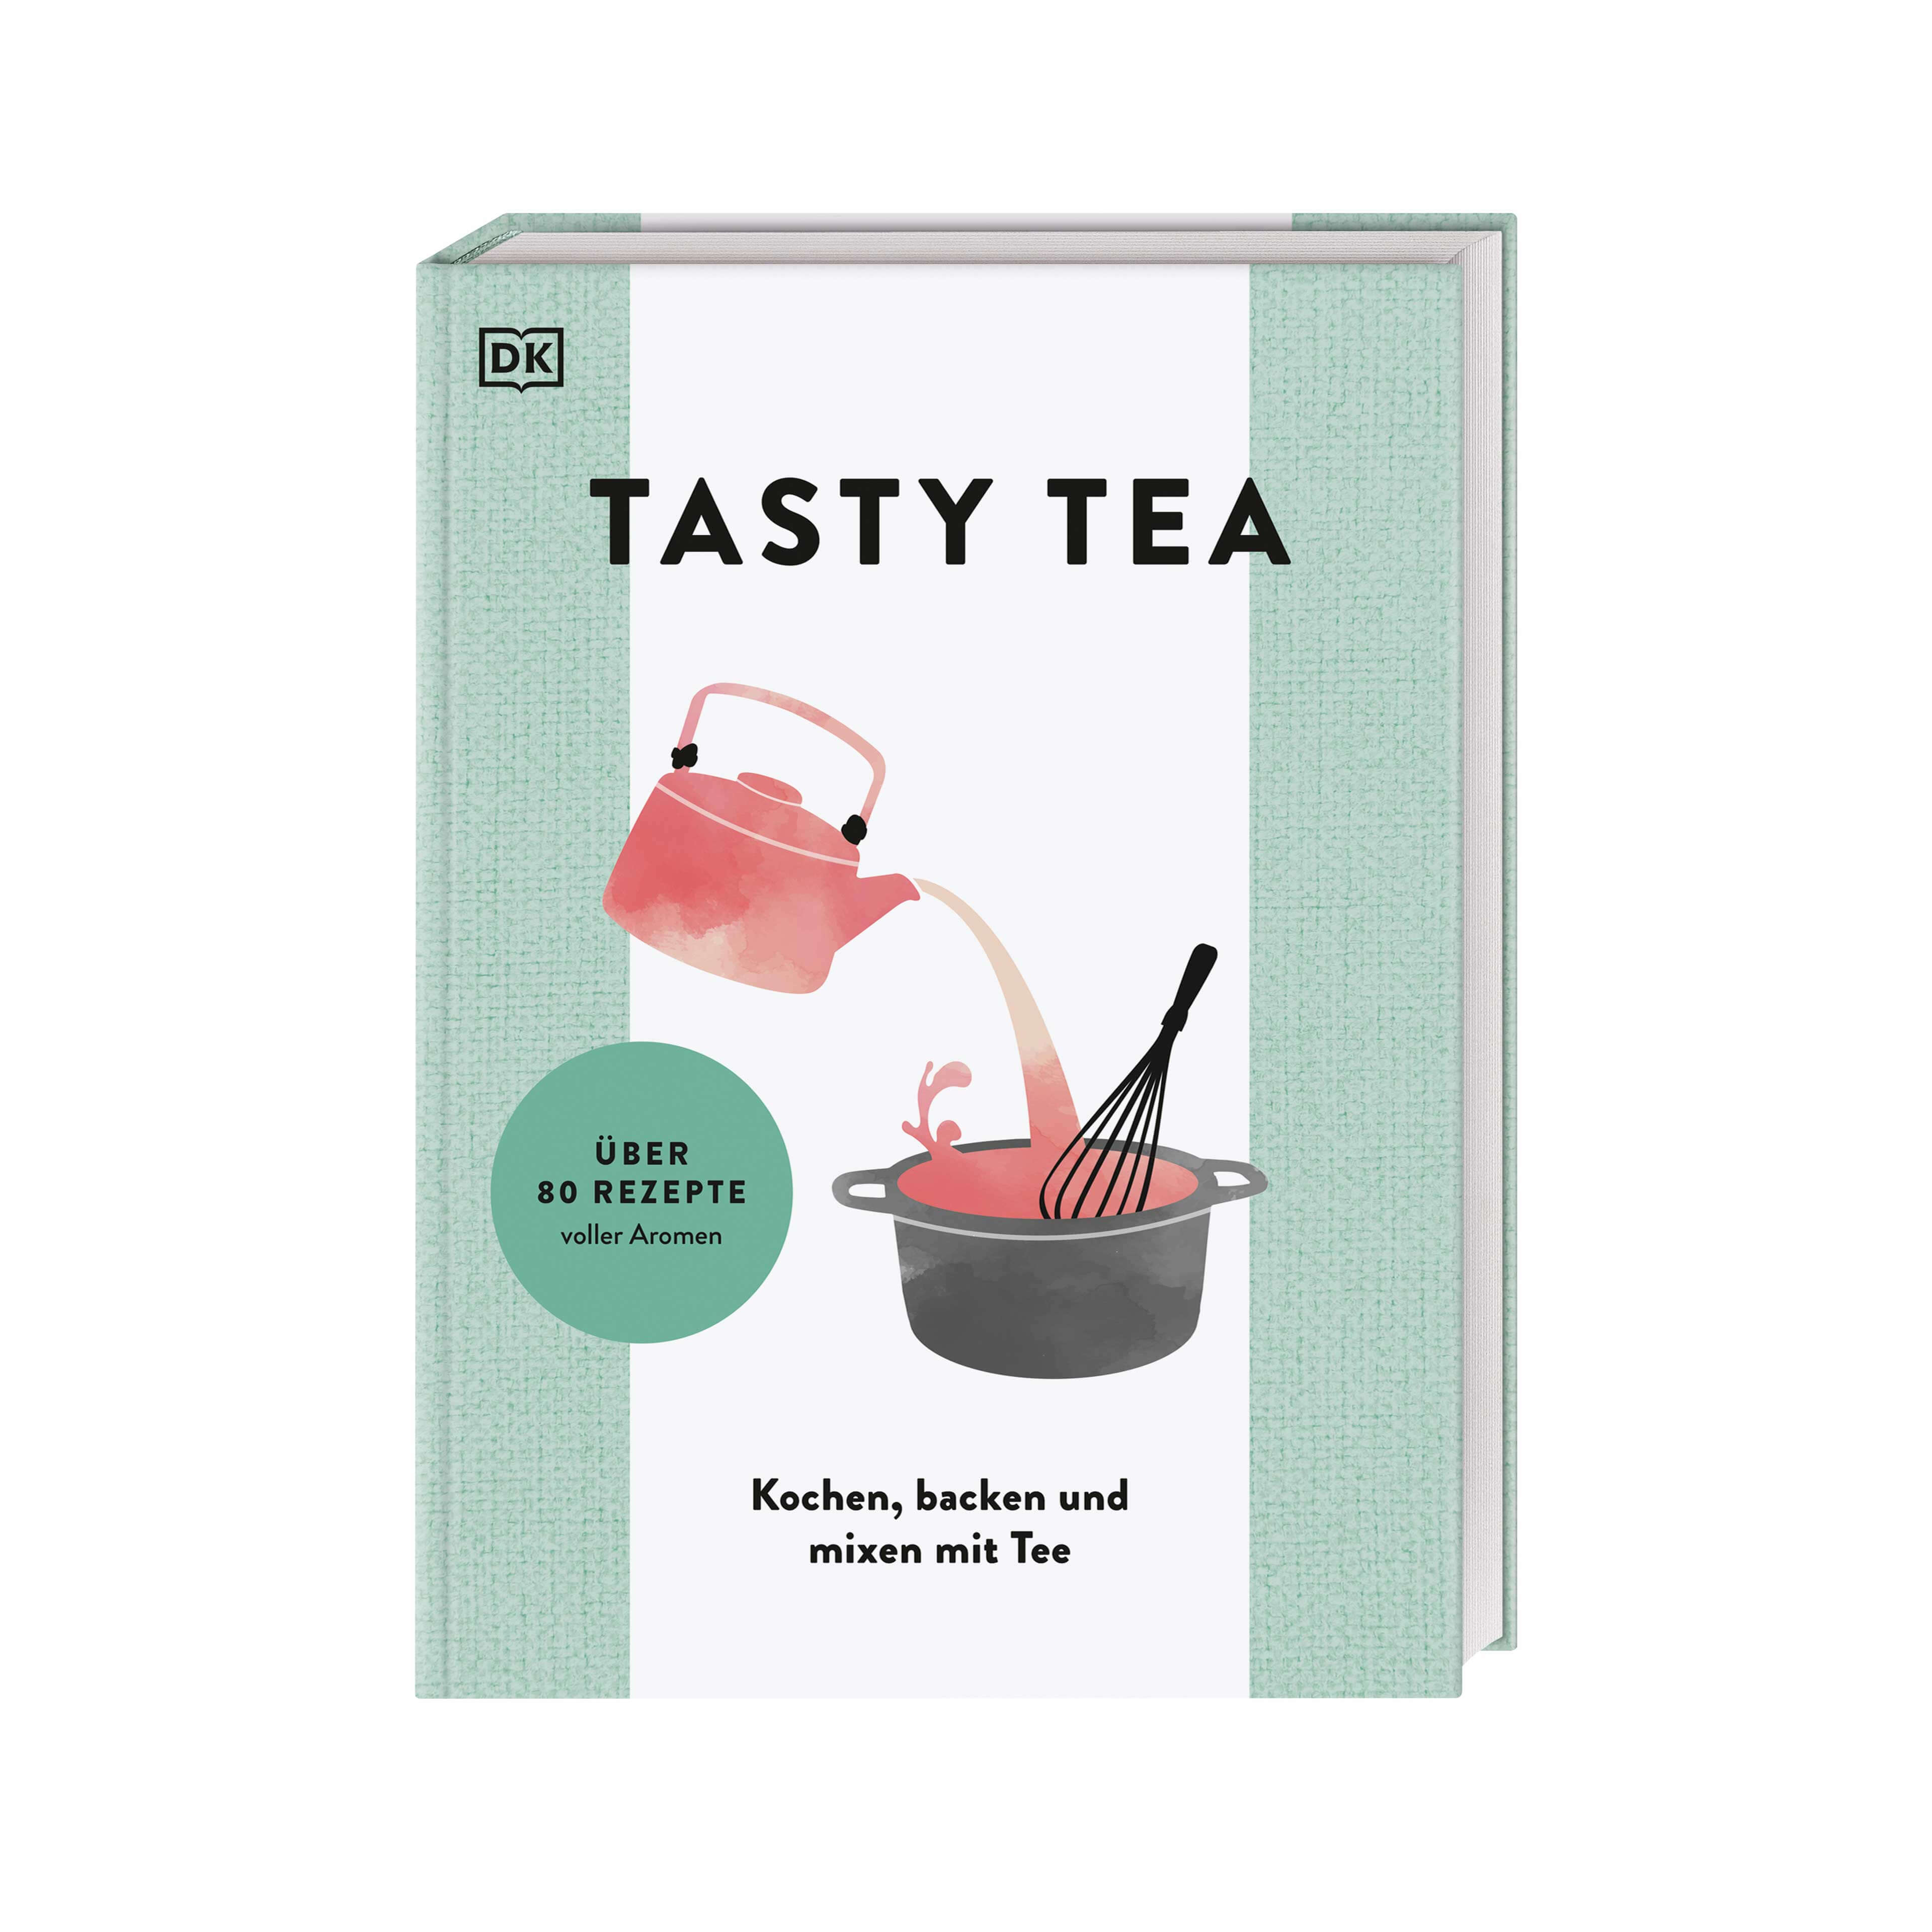 TASTY TEA - el libro de cocina del té